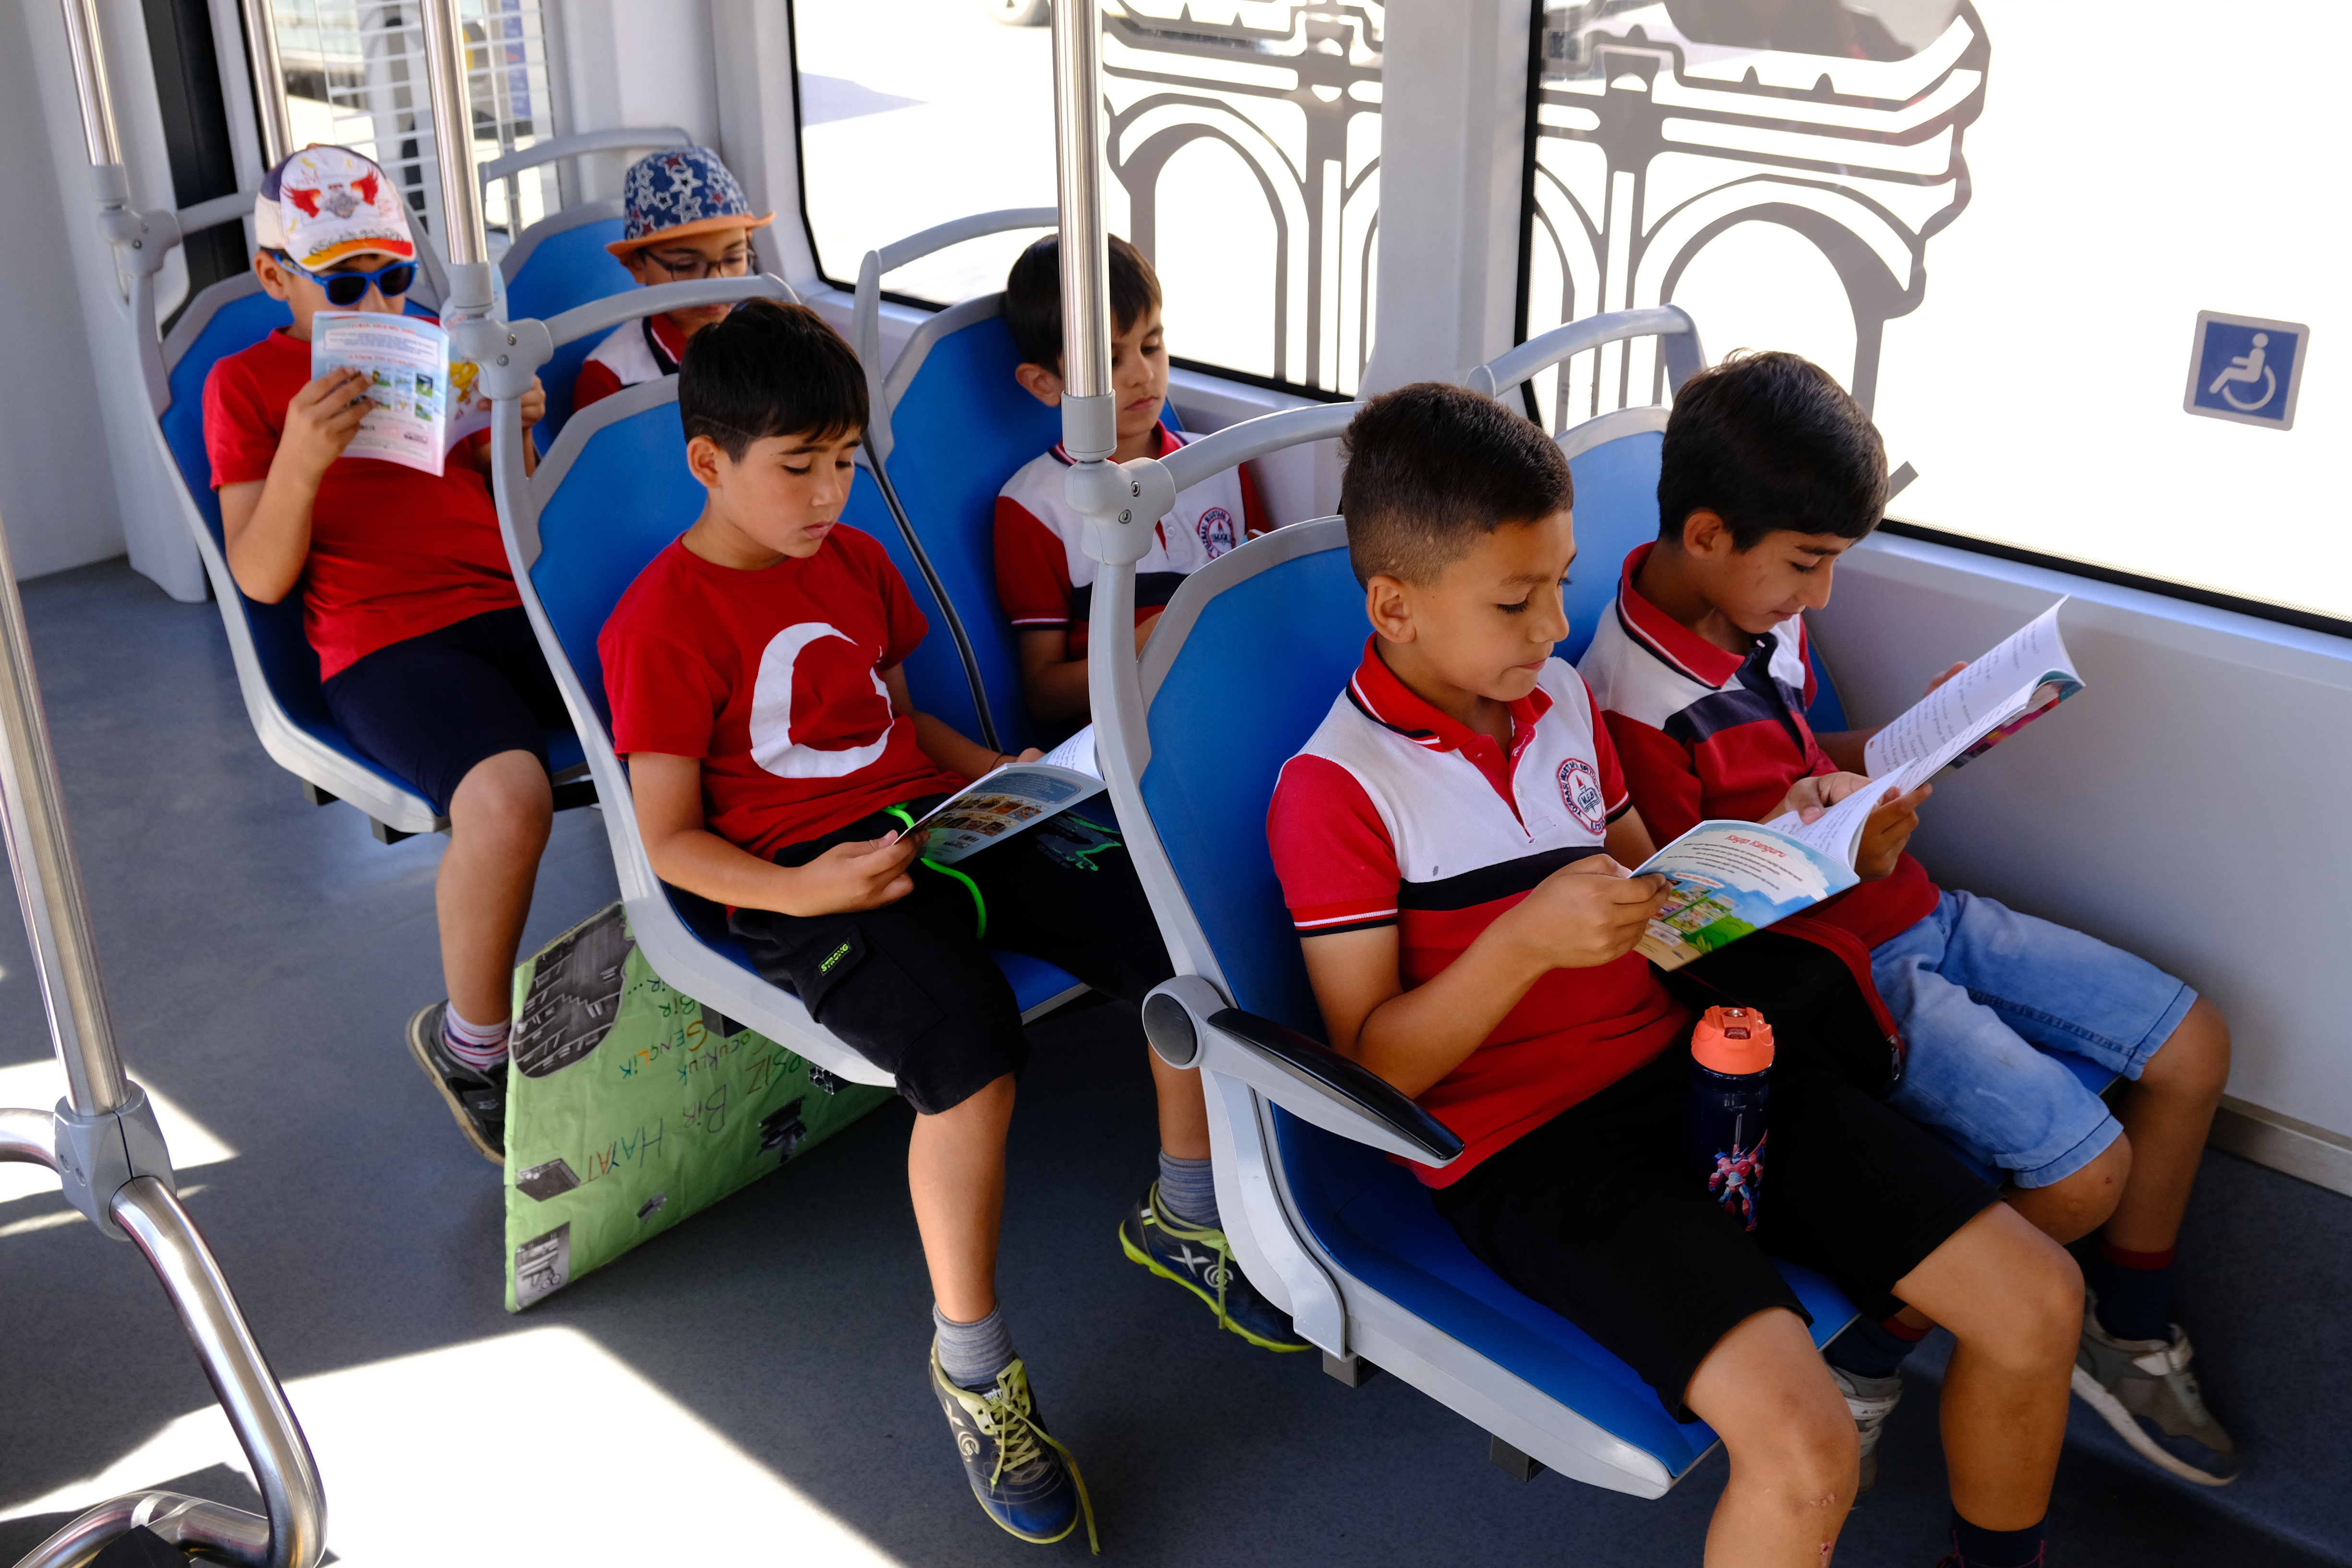 Antalya'da öğrenciler Antray'da kitap okuma etkinliği gerçekleştirdi